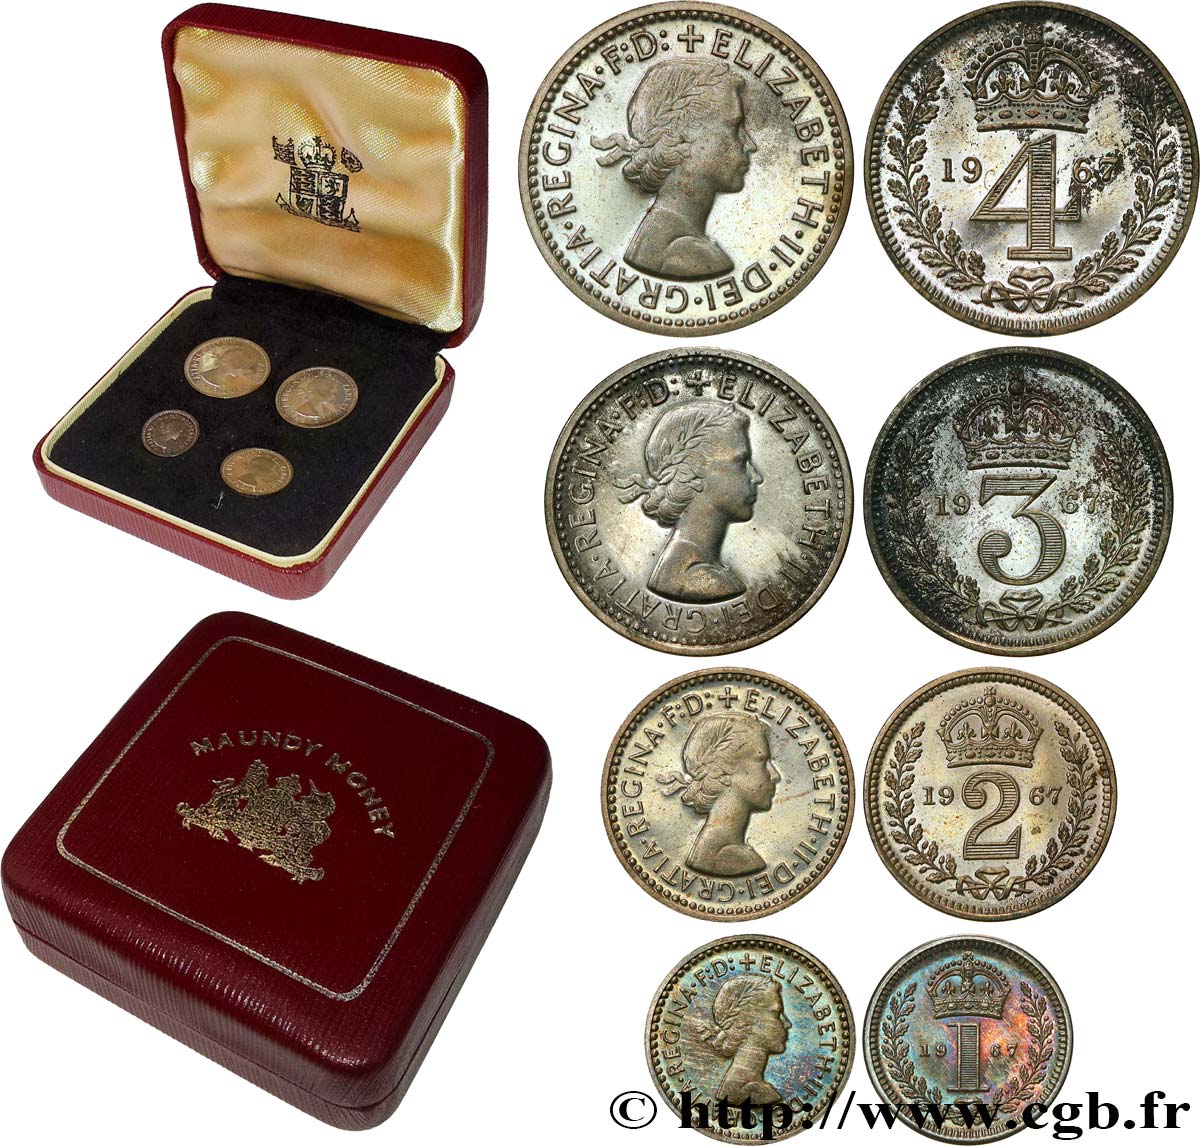 ROYAUME-UNI Maundy set - Penny, 2 pence, 3 pence et 4 pence 1967  BU 